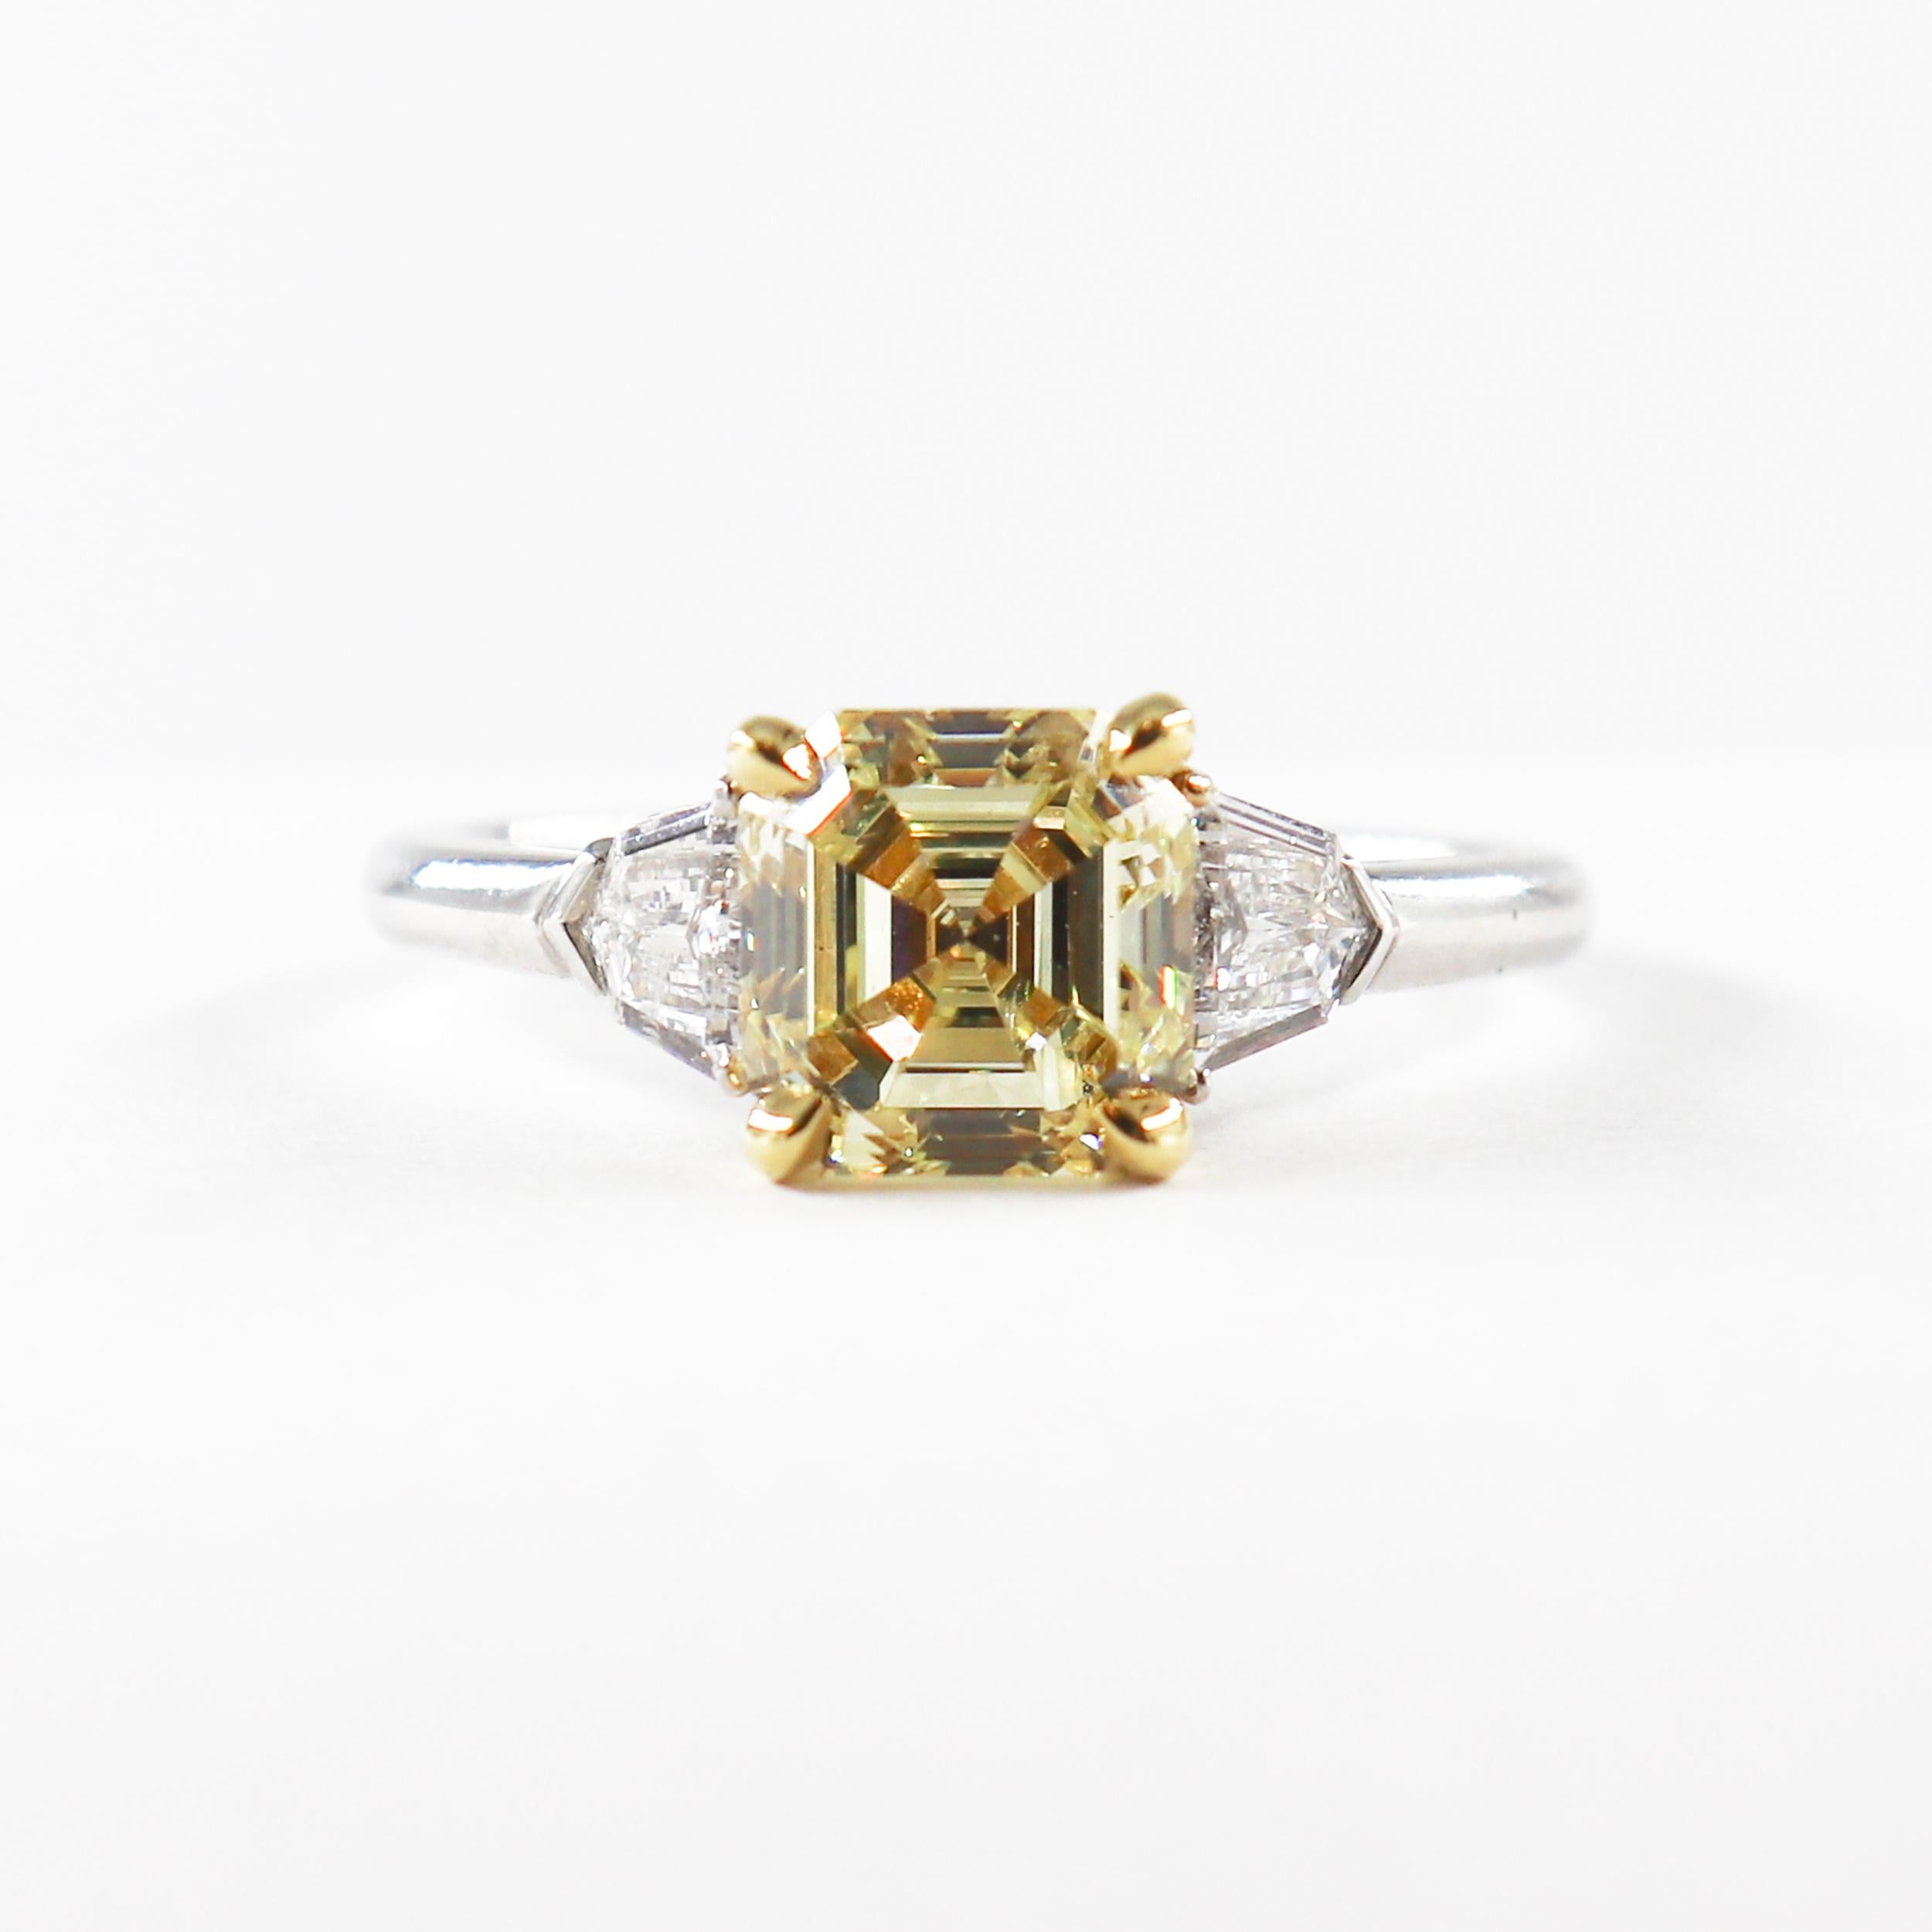 Dieses exquisite Stück von J. Birnbach kombiniert klassischen Stil mit einem Hauch von Farbe. Der Ring ist mit einem 1,94 Karat schweren, GIA-zertifizierten Asscher-Diamanten im Fancy-Gelb-Schliff besetzt, der eine wunderbar satte Farbe und ein